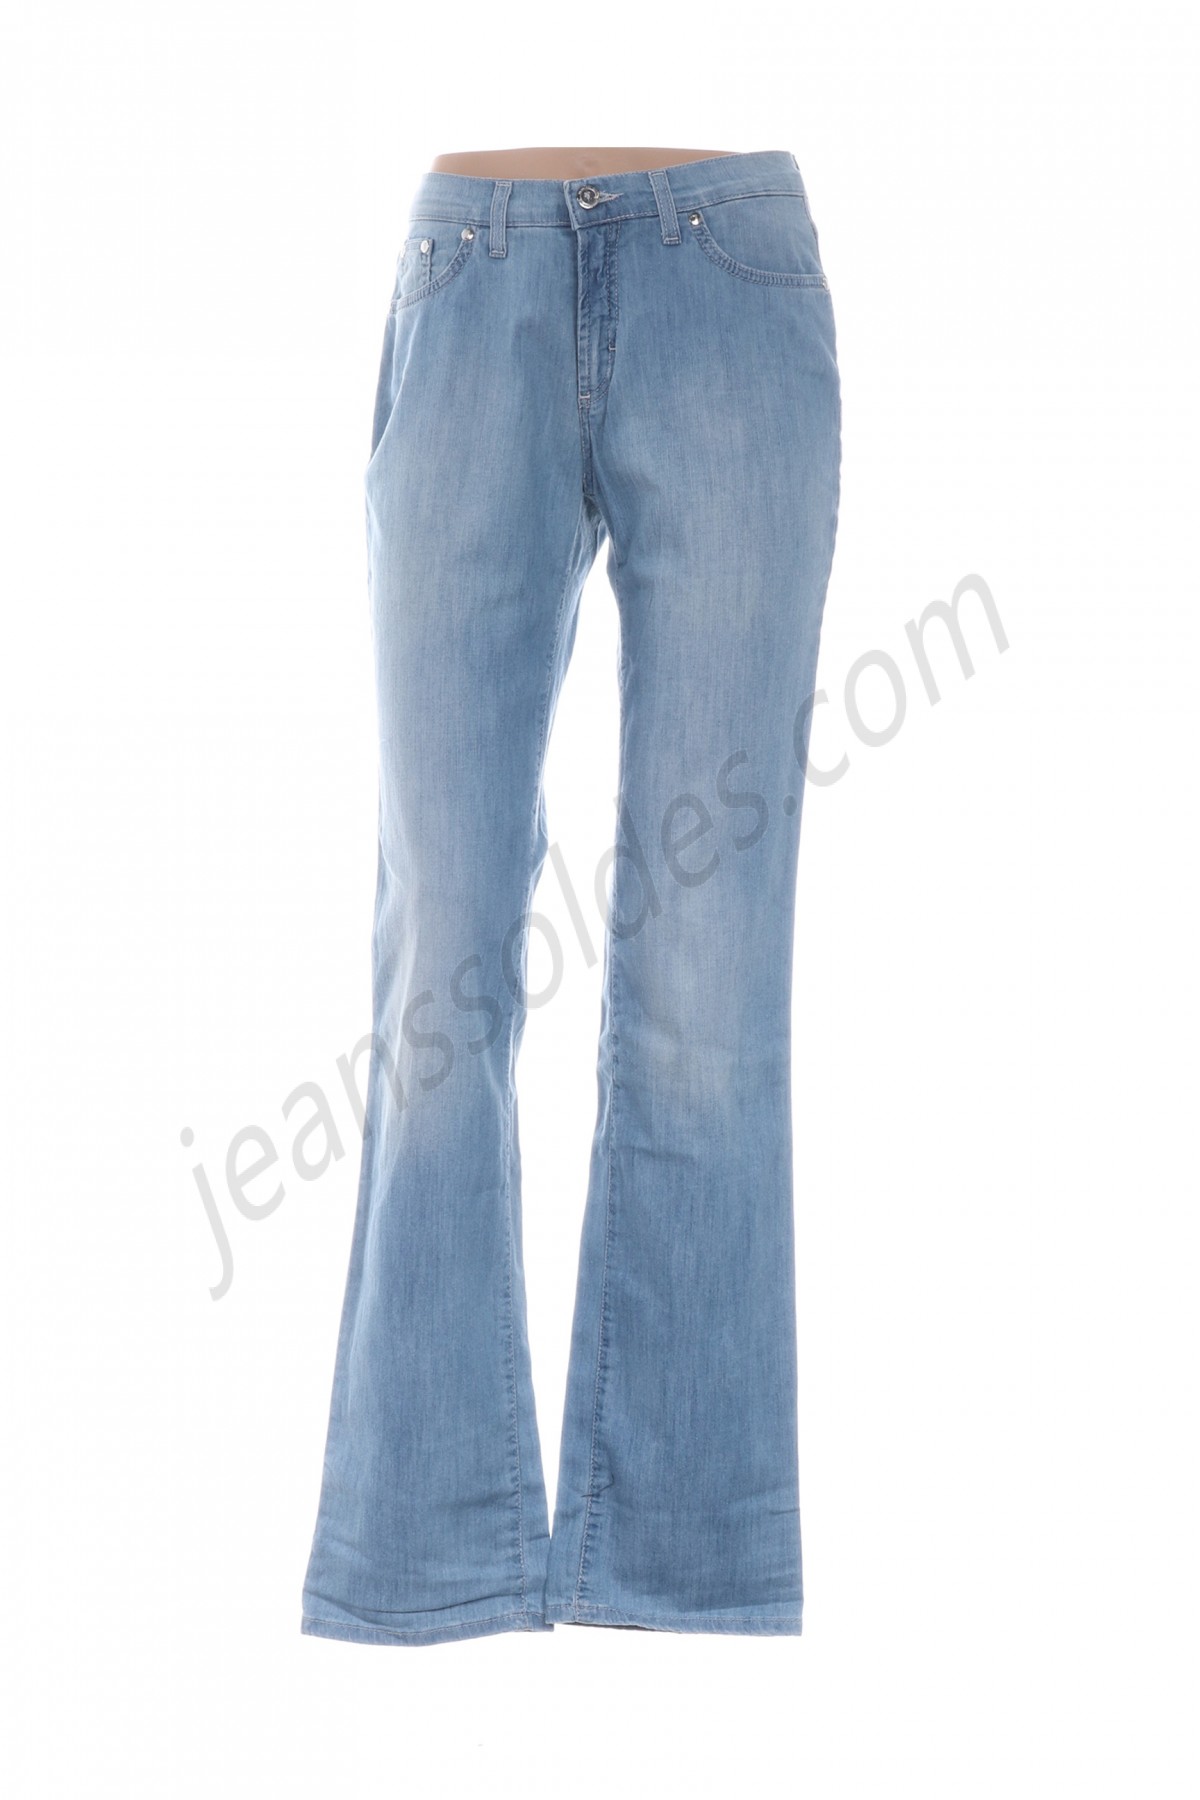 trussardi jeans-Jeans coupe droite prix d’amis - -0